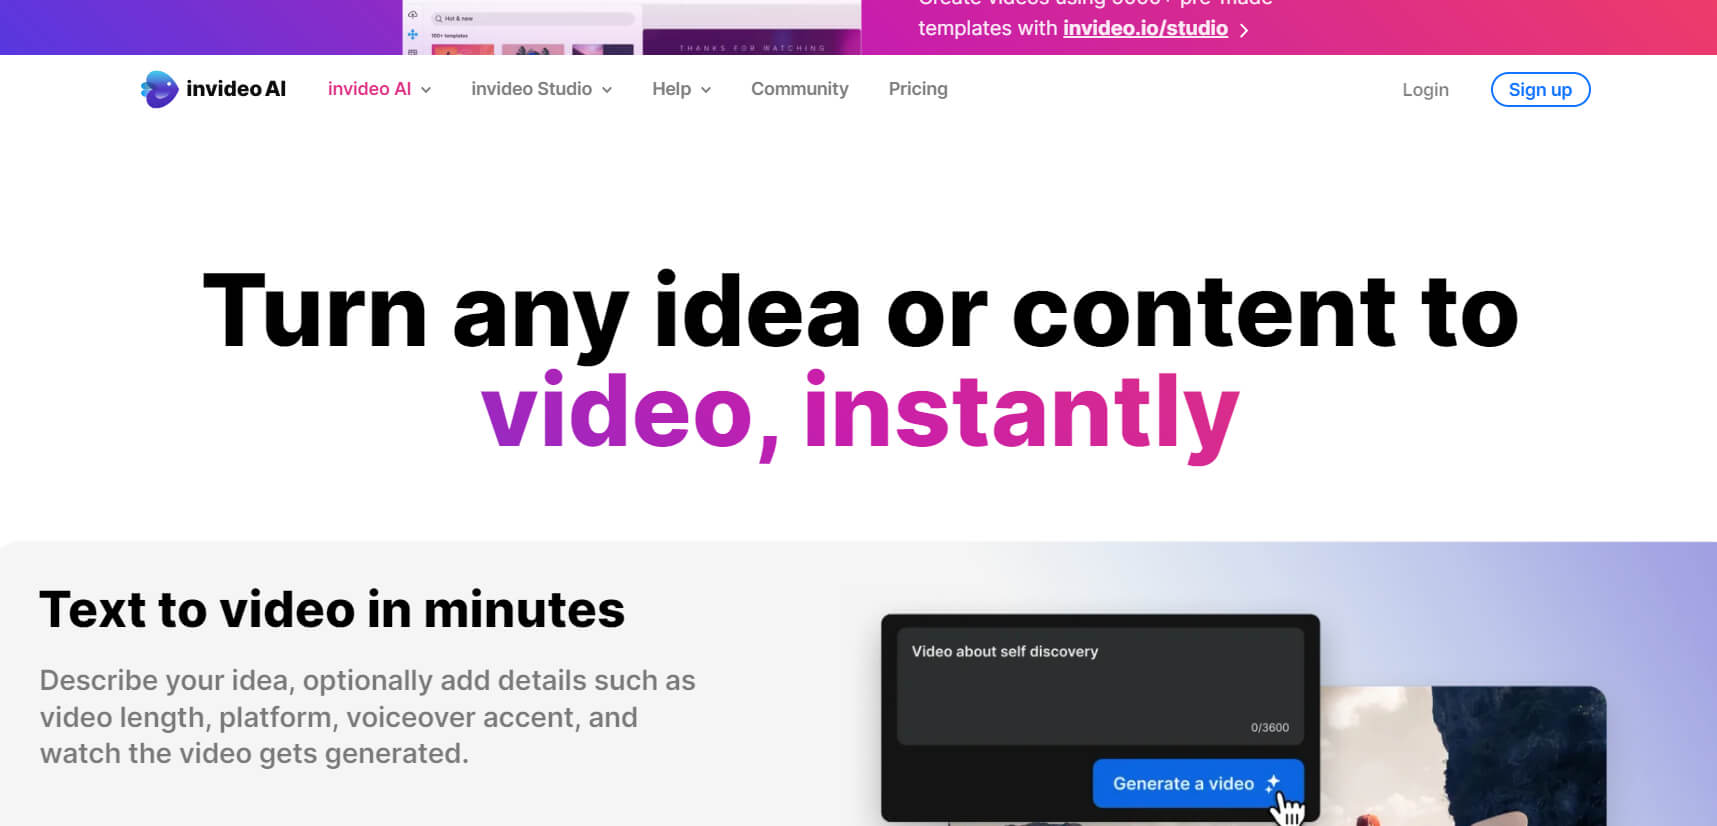  InVideo ist eine Online-Video-Ersteller-Plattform, die es Benutzern ermöglicht, professionell aussehende Videos in wenigen Minuten zu erstellen. Mit einer benutzerfreundlichen Oberfläche und einer Vielzahl von Vorlagen, Übergängen, Animationen und Musikbibliotheken können Benutzer ihre Videos personalisieren und anpassen, um ihre Botschaften effektiv zu vermitteln. InVideo bietet 